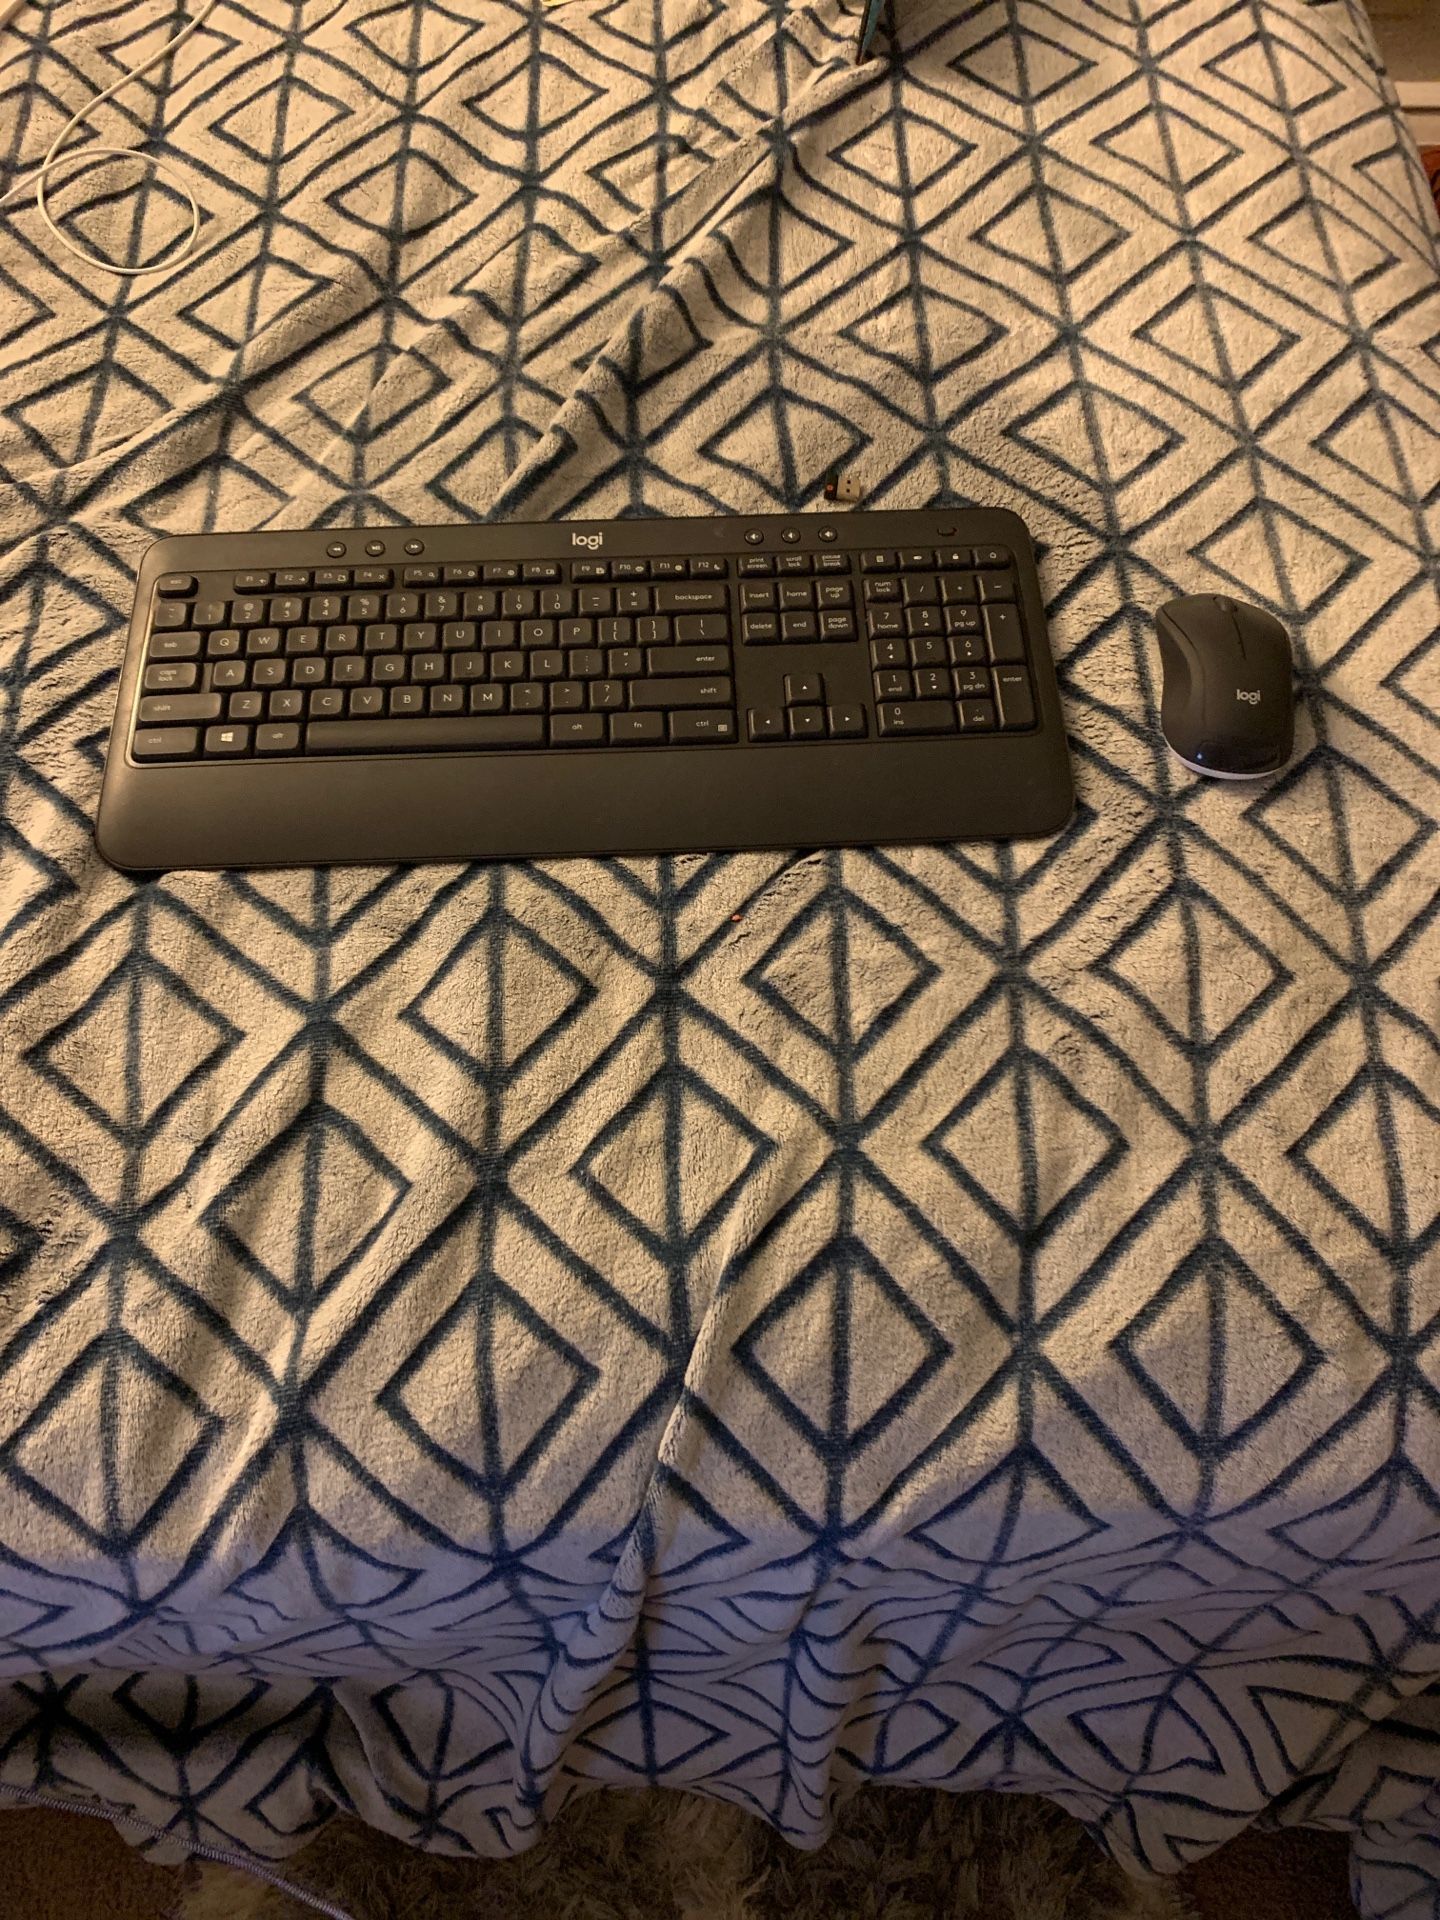 Wireless Logitech Keyboard and Mouse